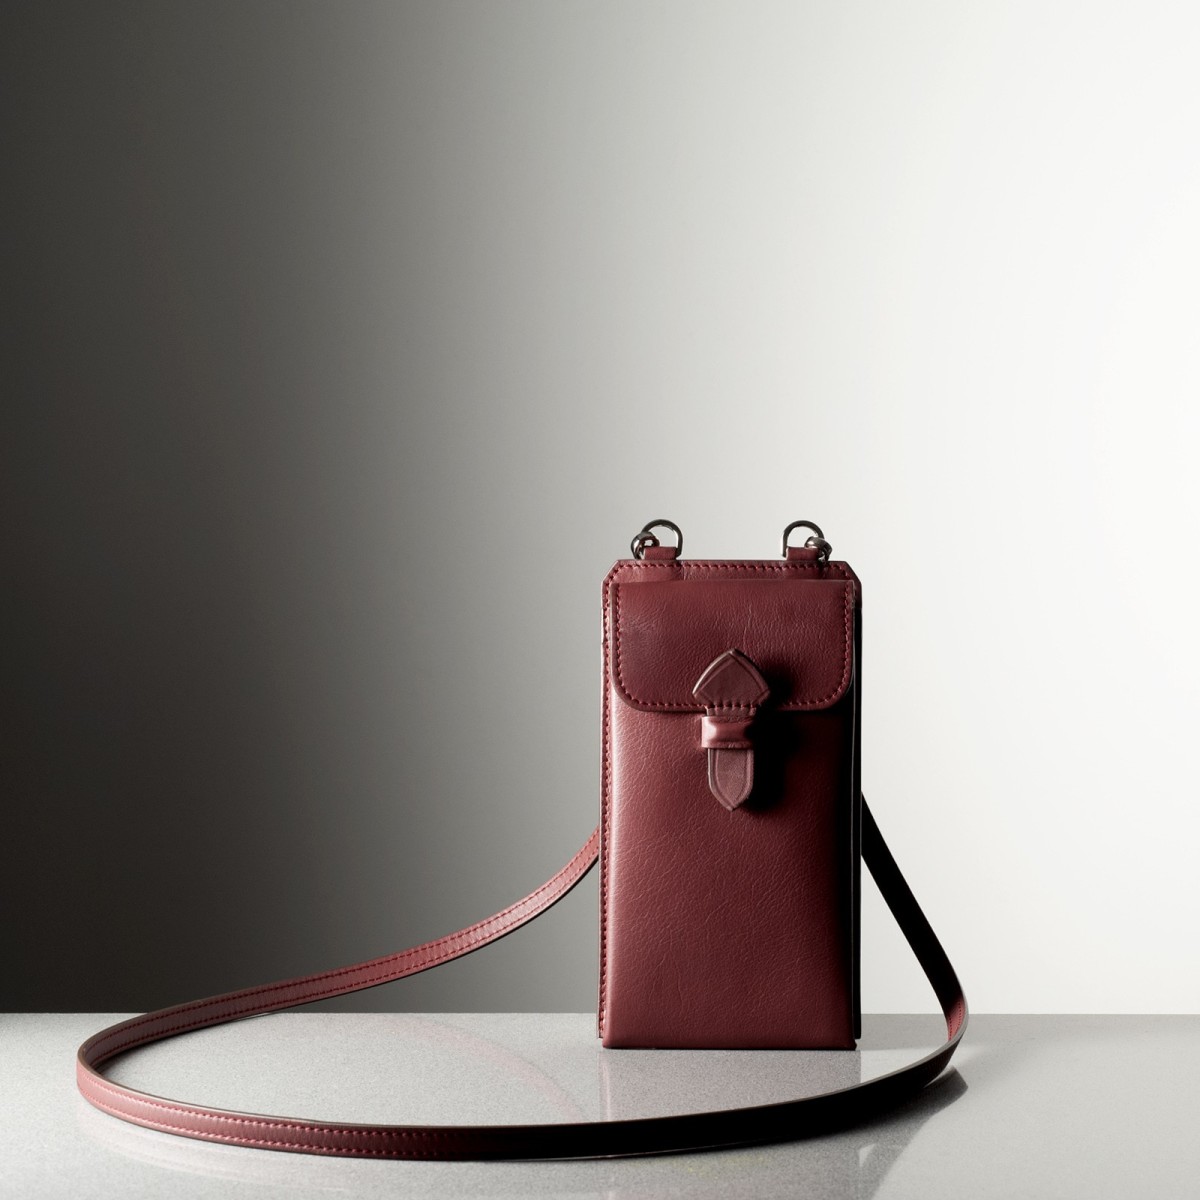 LEONARDO PM - Calfskin leather phone holder, handmade in Italy